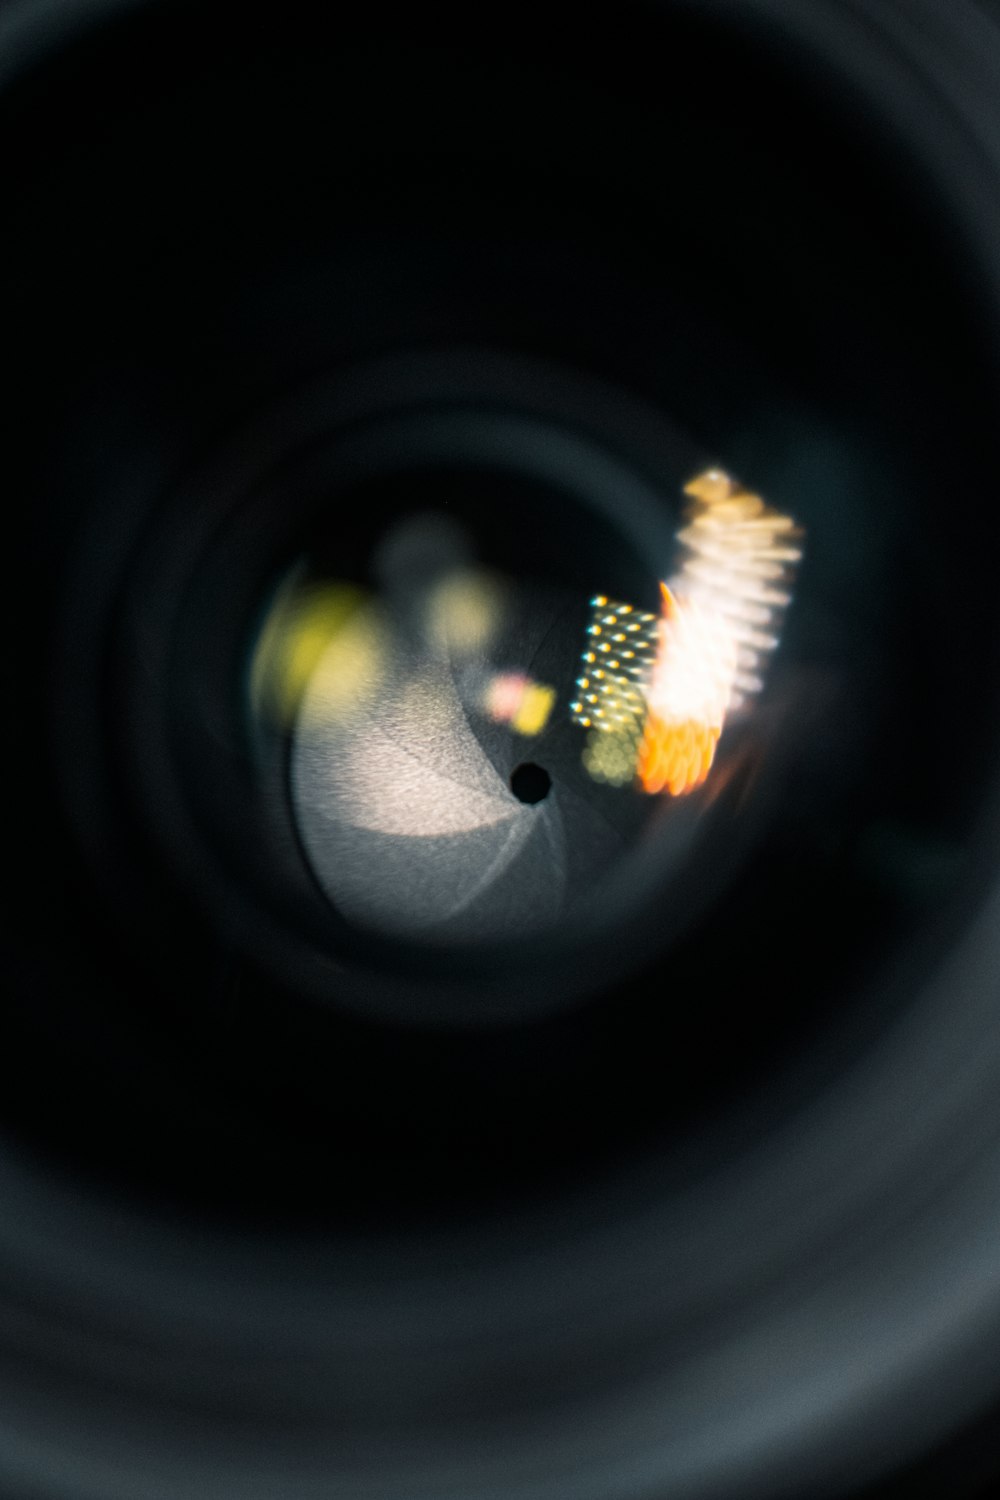 Una vista de cerca de la lente de una cámara